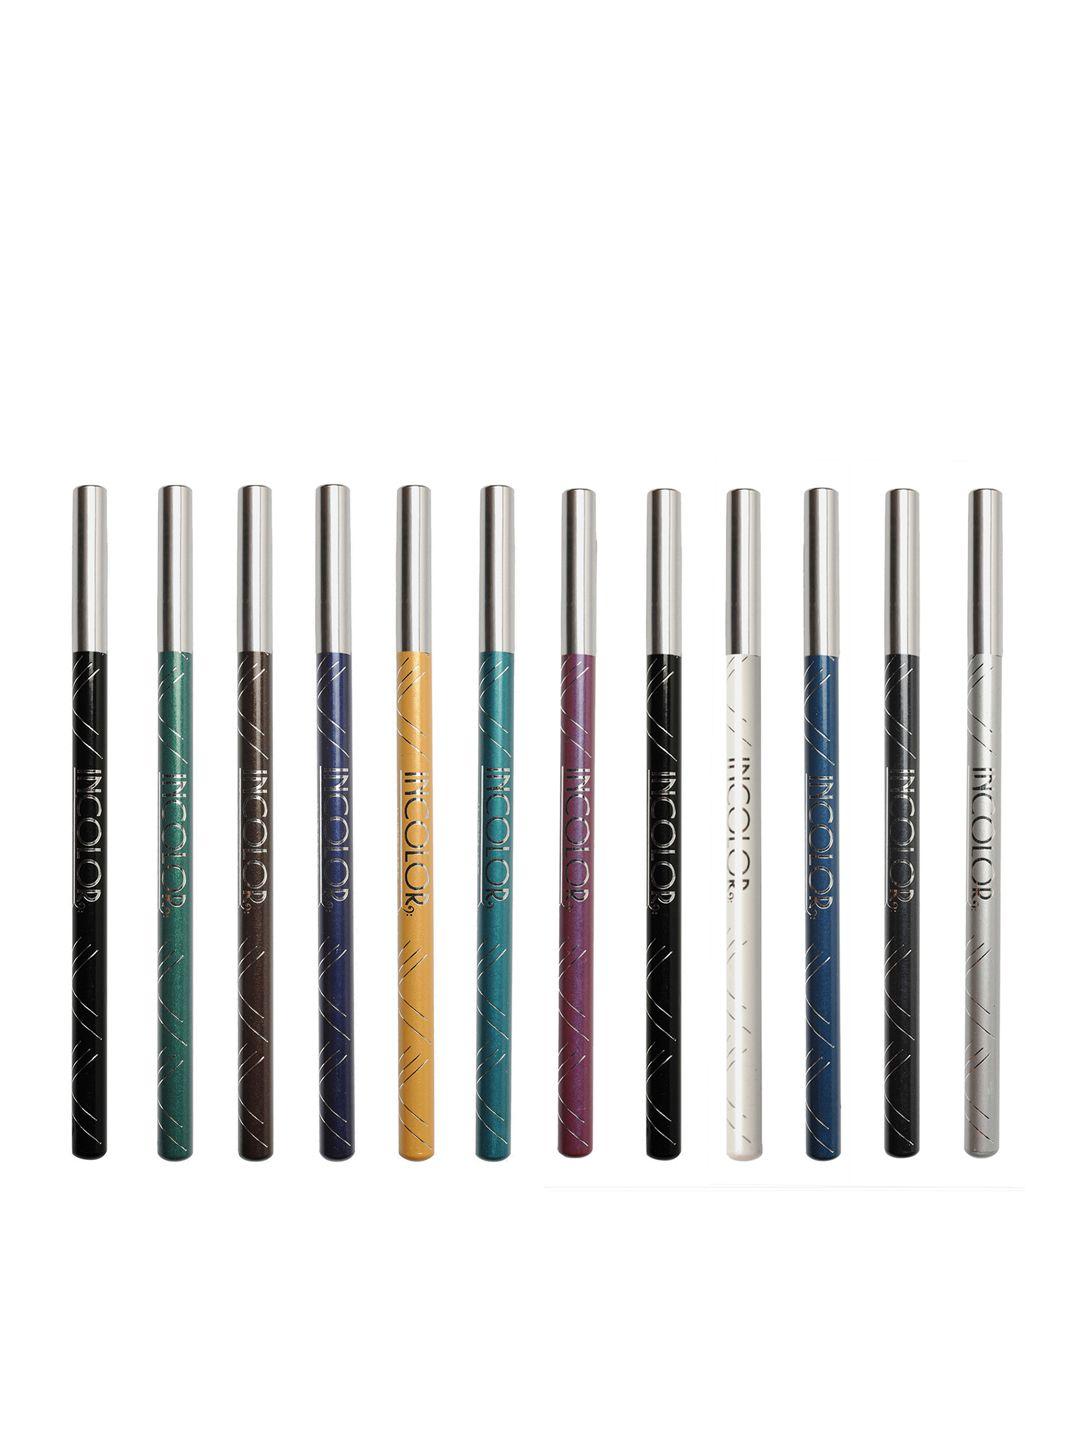 incolor set of 12 intense longwear eye pencils